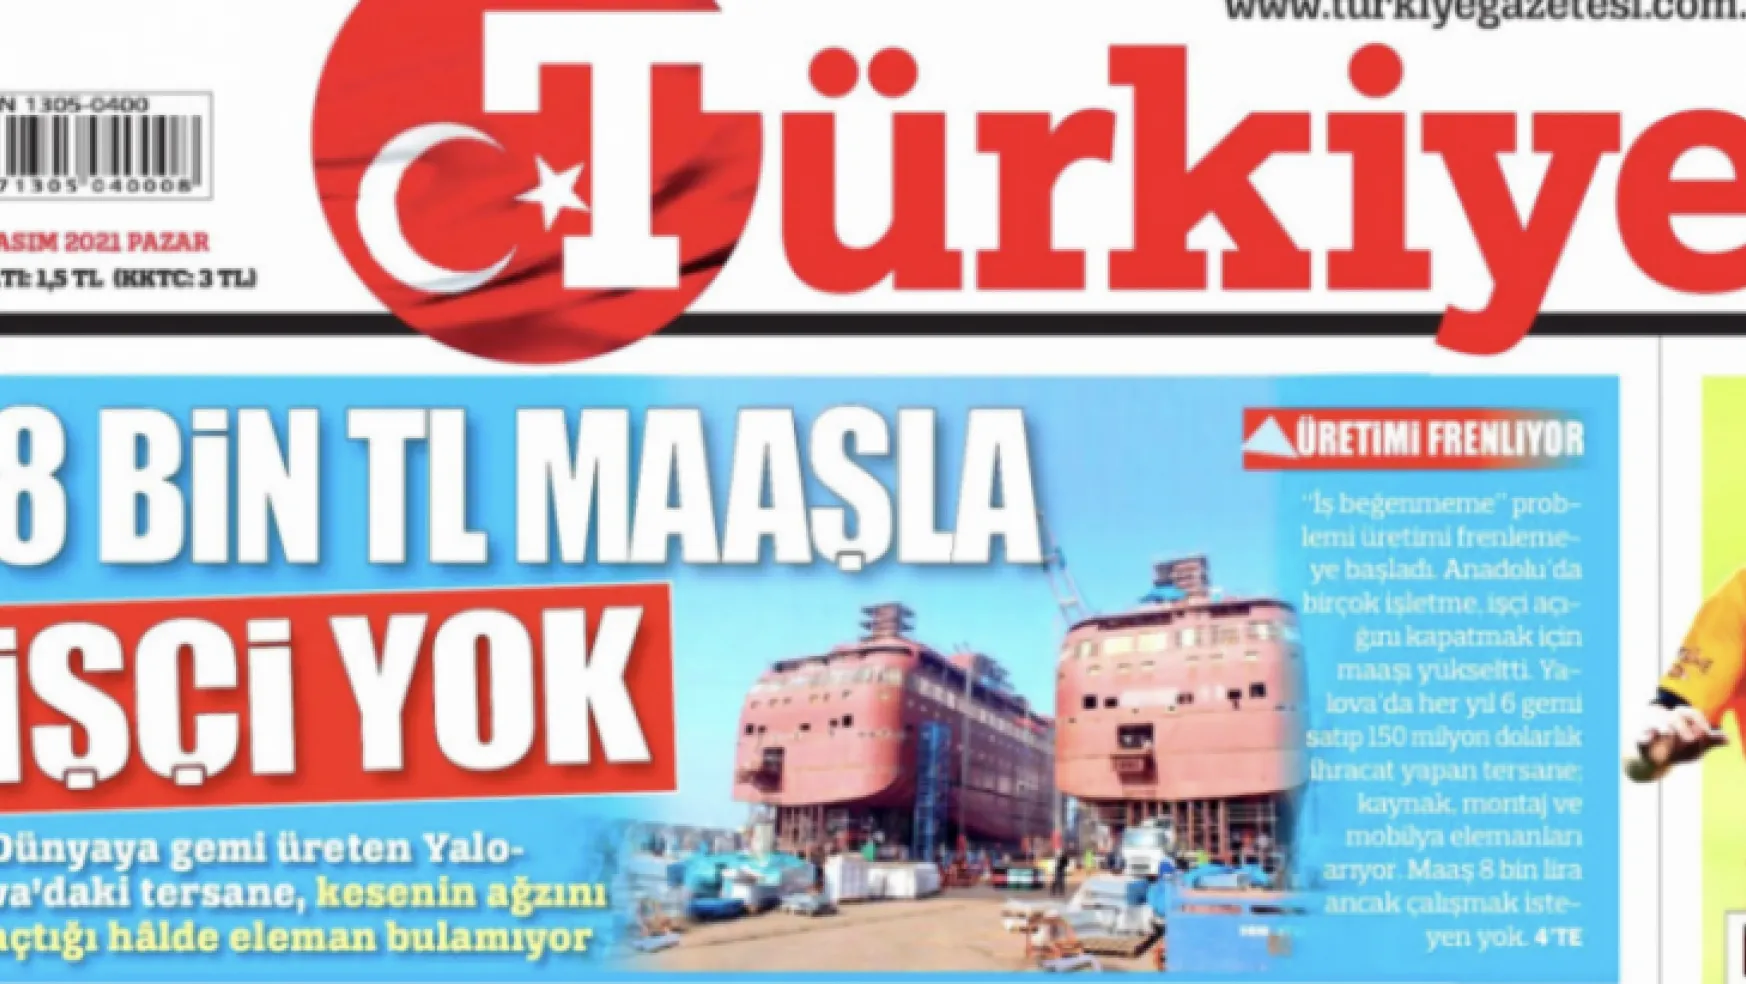 Türkiye gazetesine tepki yağdı: 'Bu manşeti atan cahil...'